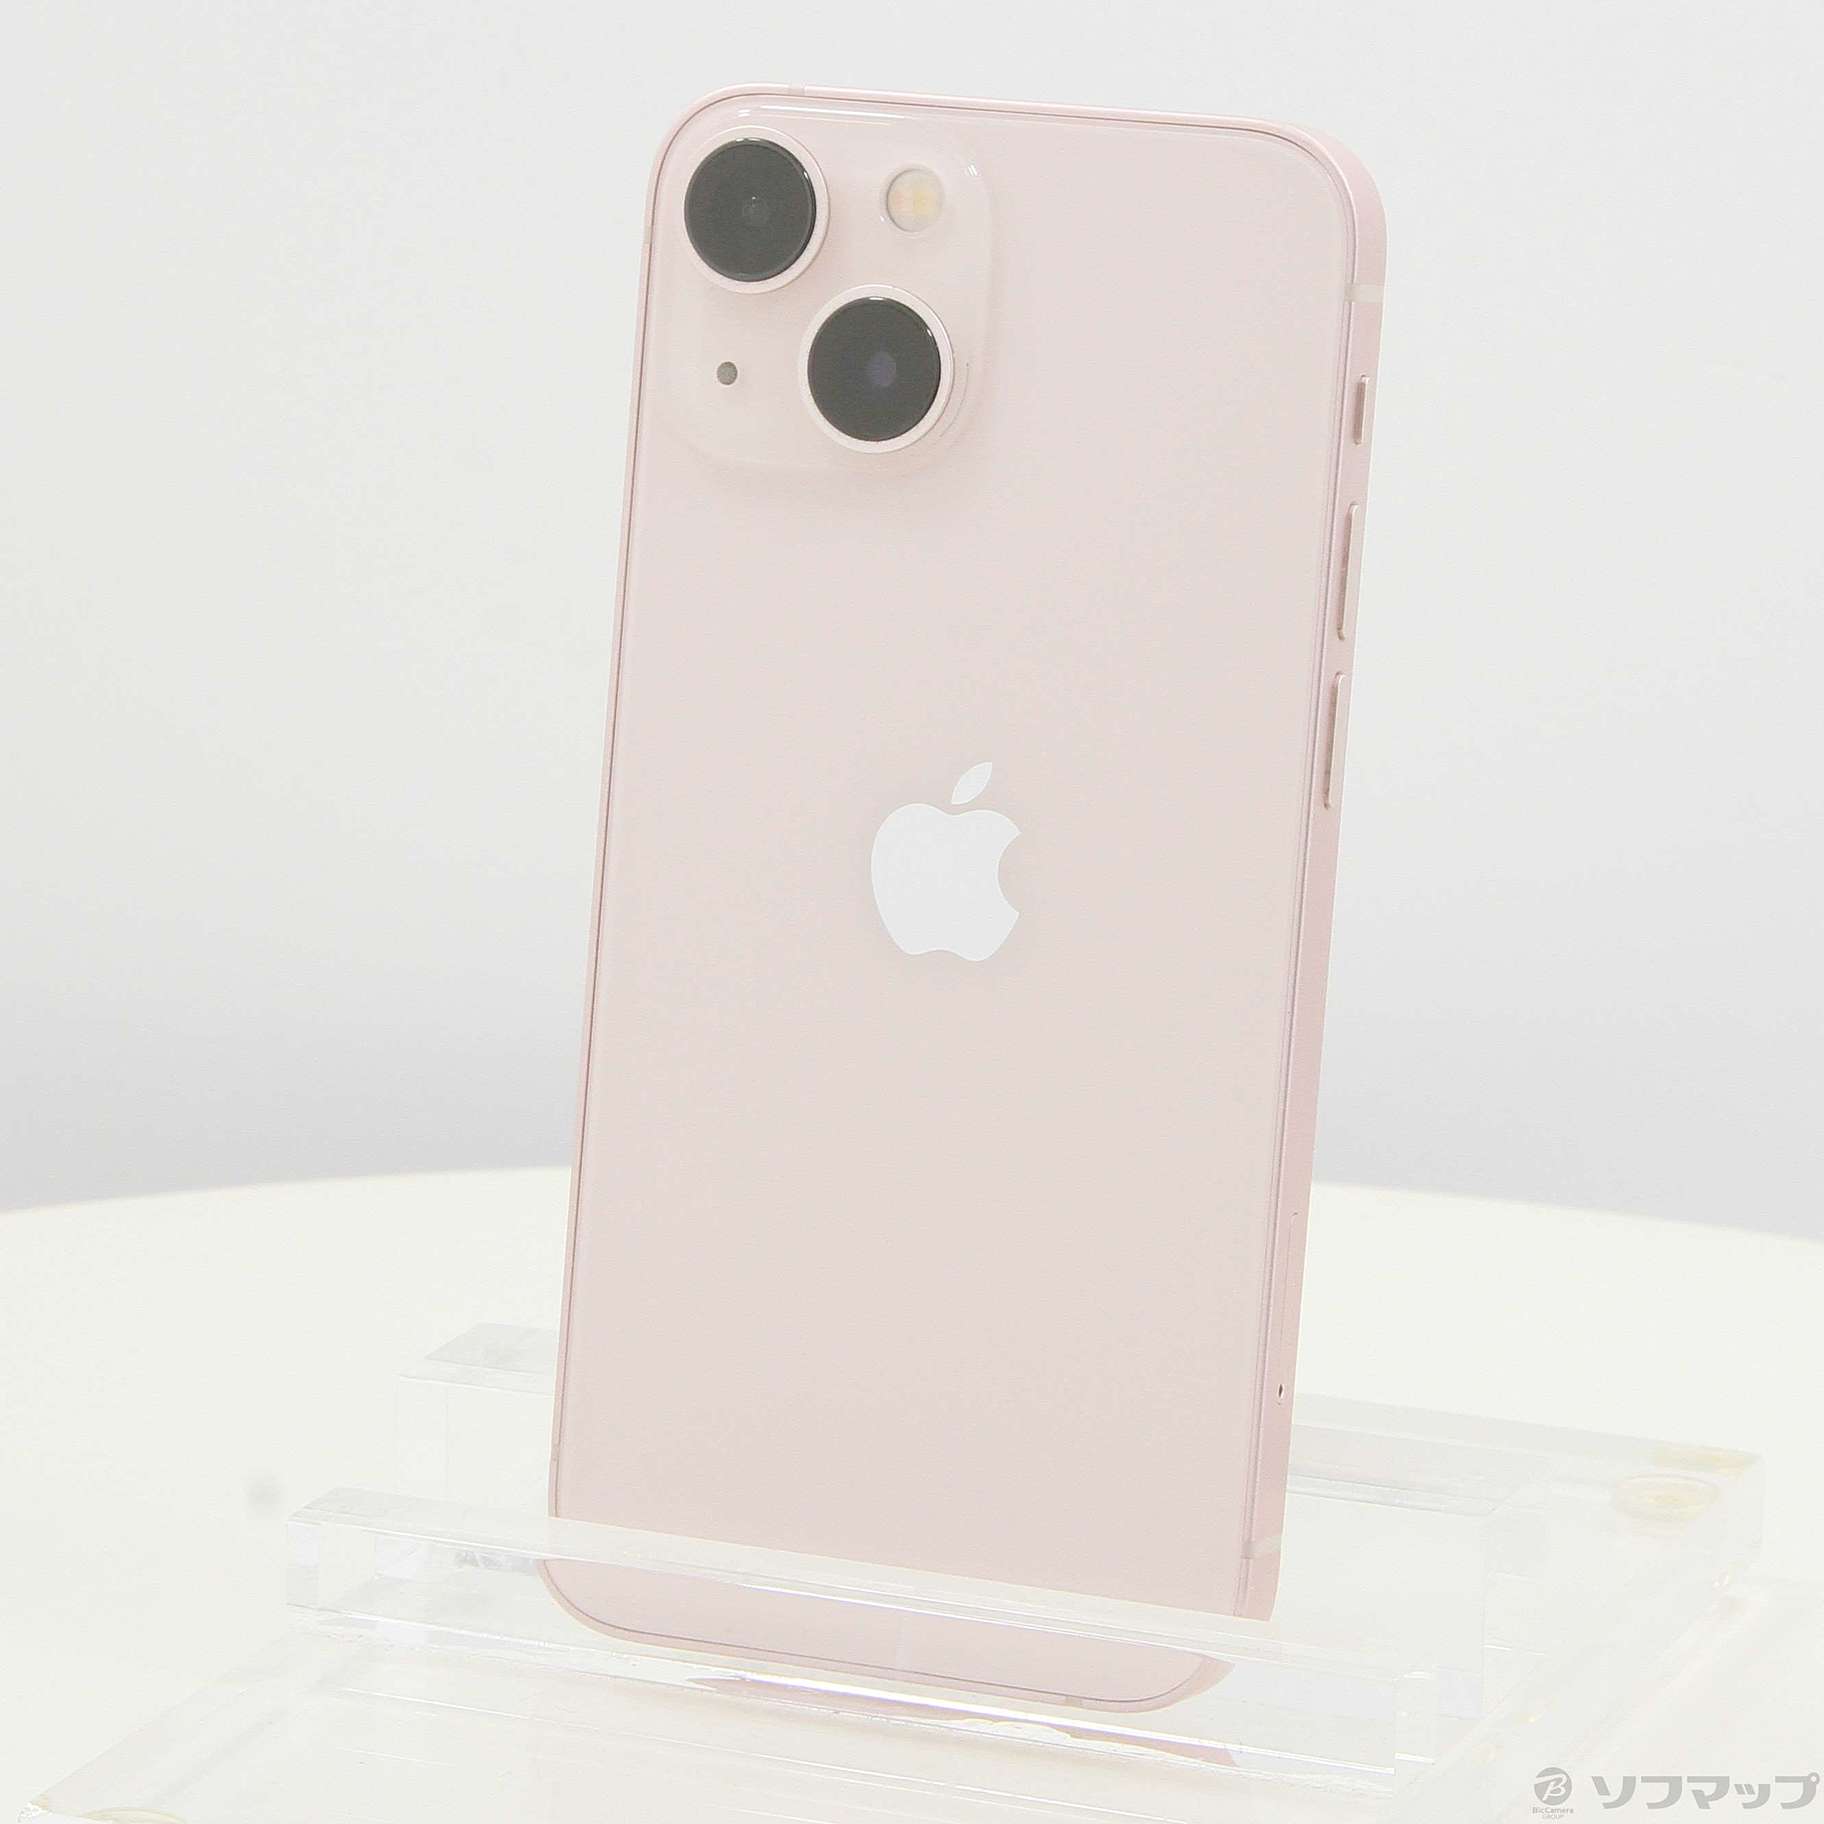 郵送送料無料 iphone13 mini 256g ピンク SIMフリー - スマートフォン 